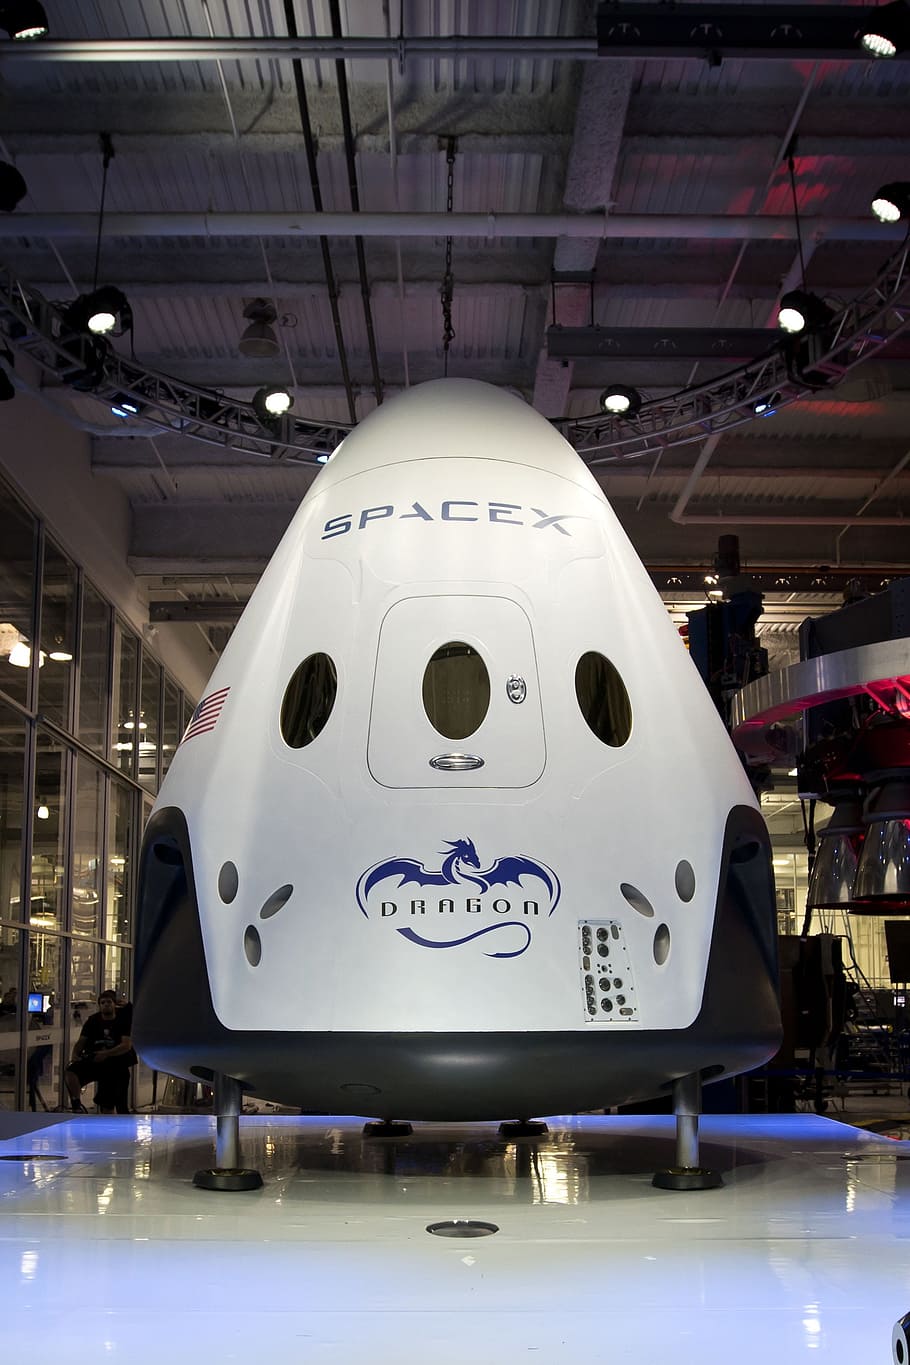 Spacecraft, Spacex, Spaceship, space module, capsule, science